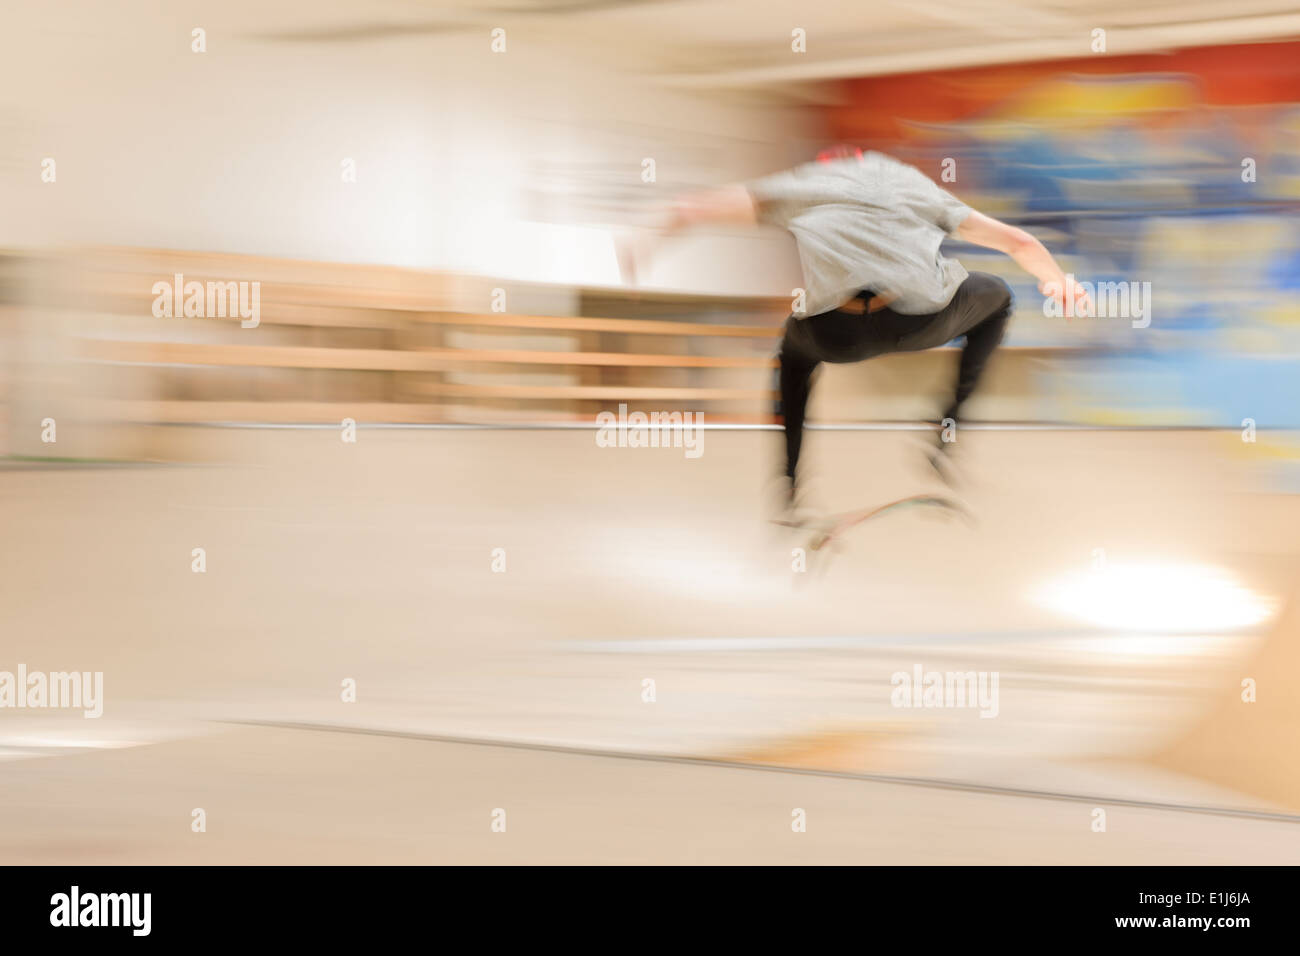 Skate boarder making Kickflip at skateboard ground Stock Photo